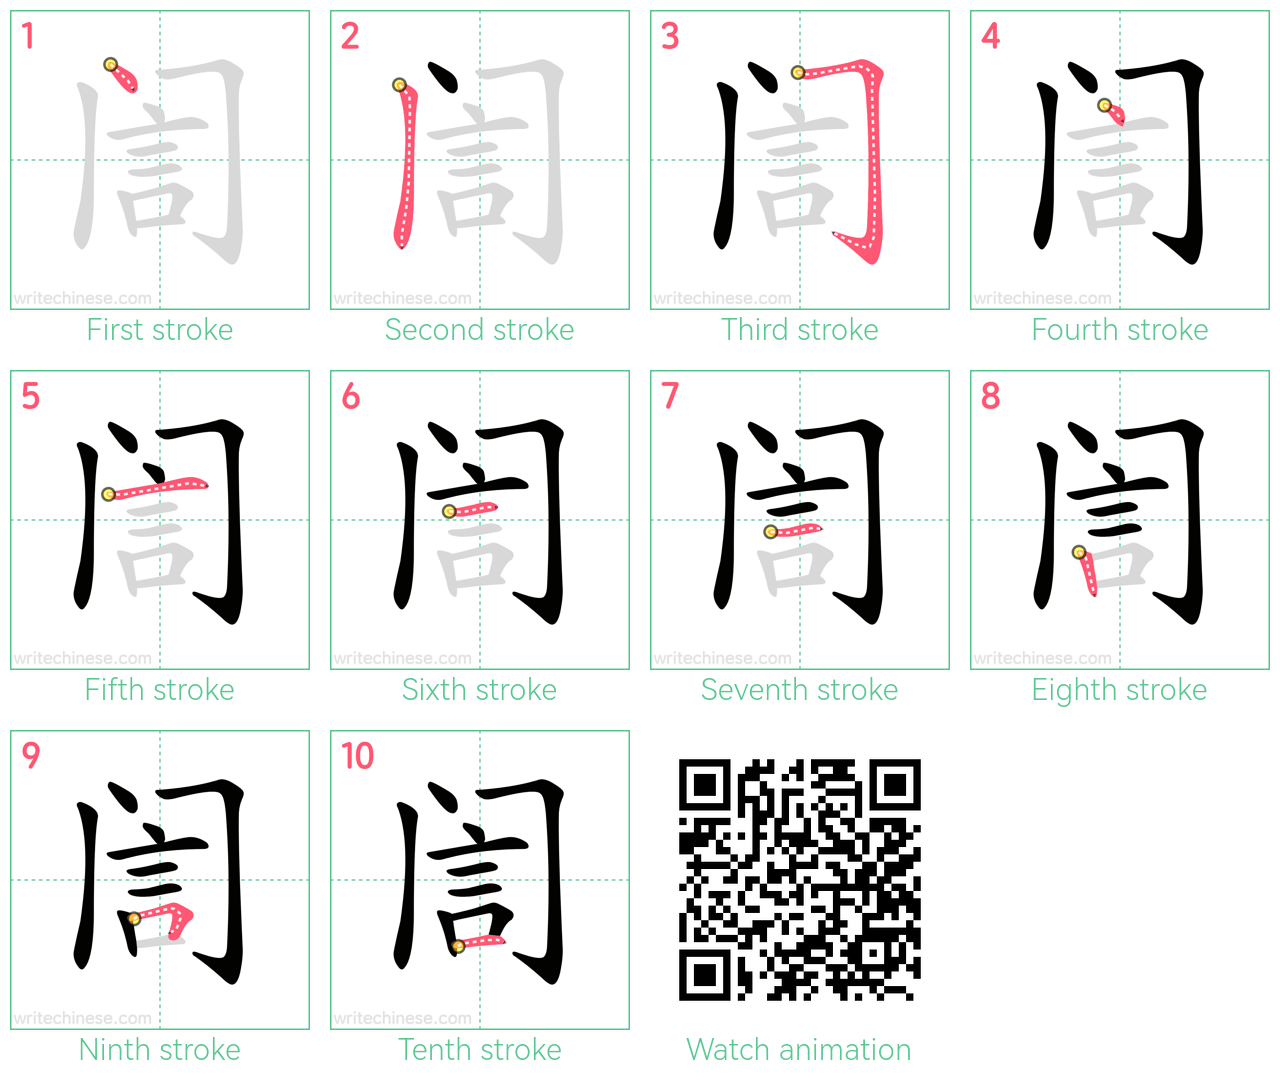 訚 step-by-step stroke order diagrams